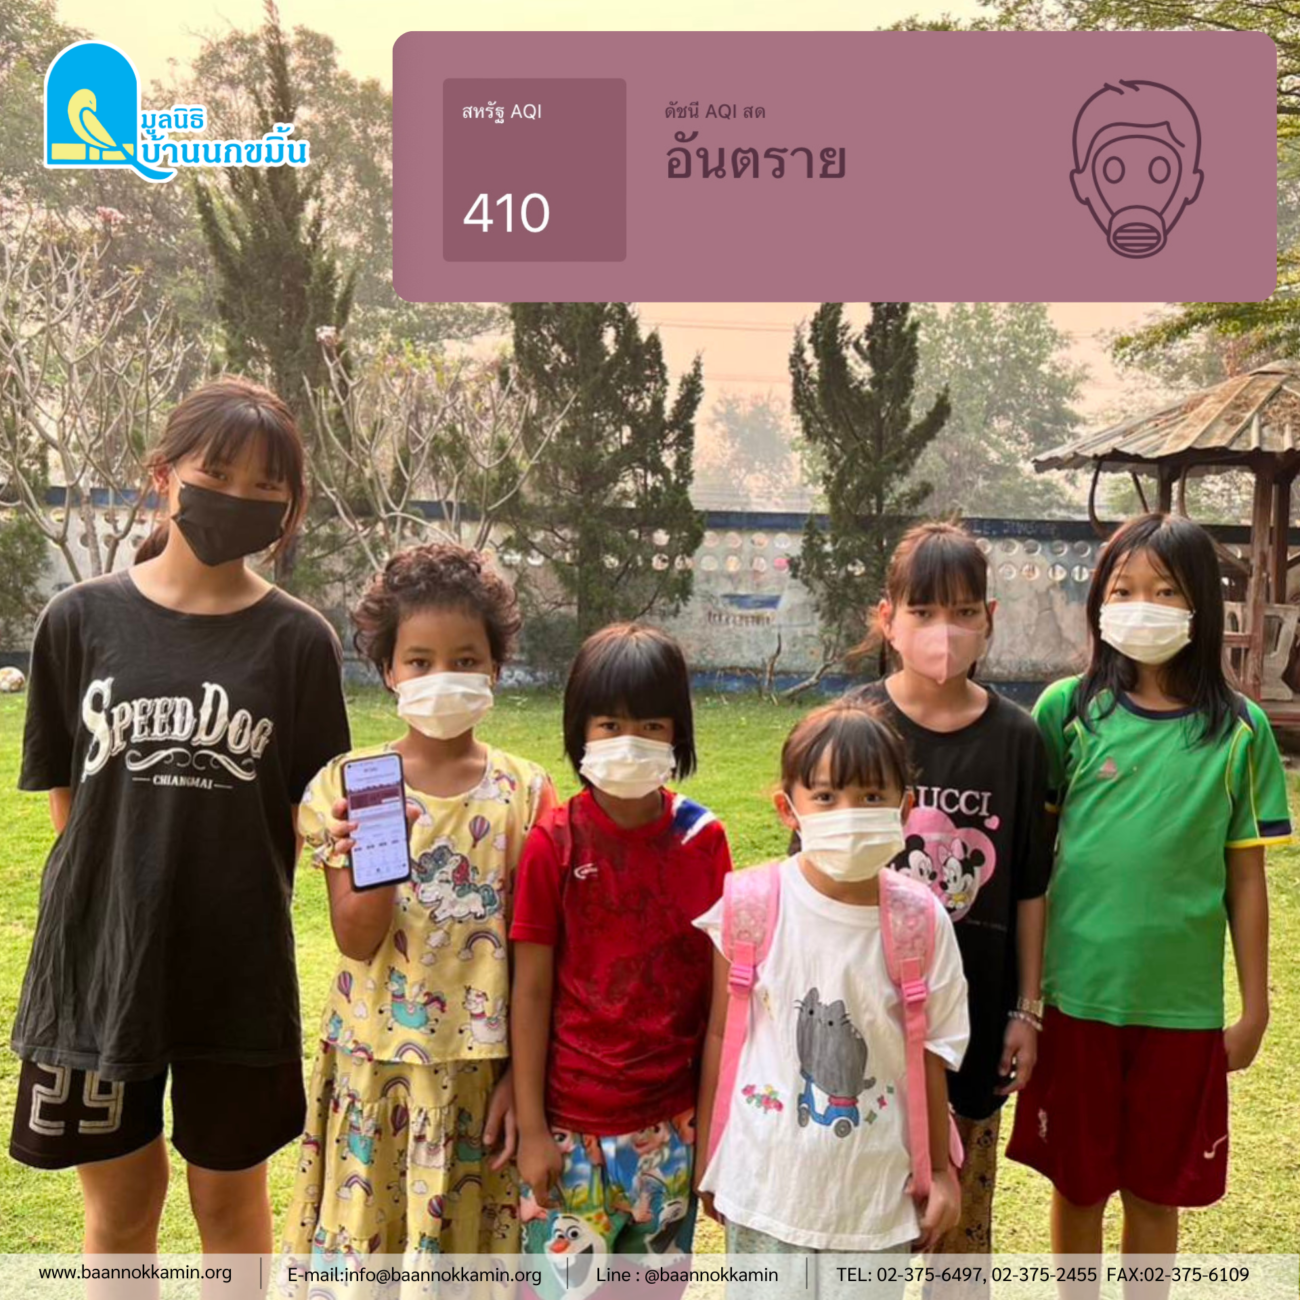 ค่าฝุ่น PM 2.5 ที่เชียงใหม่สูงขึ้นต่อเนื่อง ส่งผลกระทบกับสุขภาพของเด็กๆ